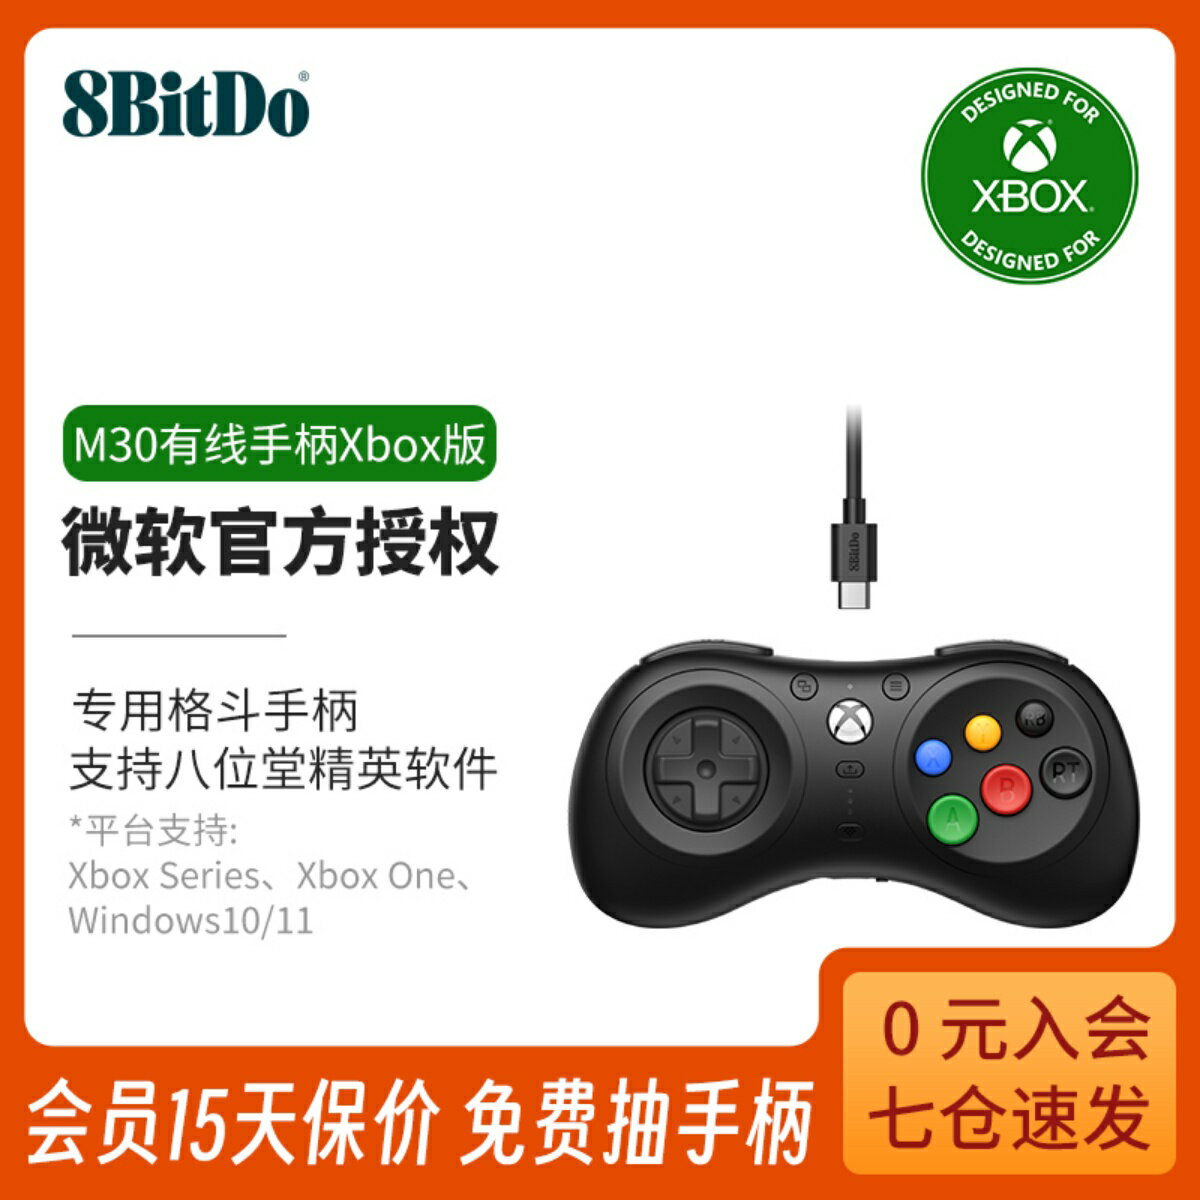 八位堂M30有線手柄Xbox版 微軟官方授權 格斗游戲專用Xbox Series One電腦Windows1011筆記本PC通用耳麥控制